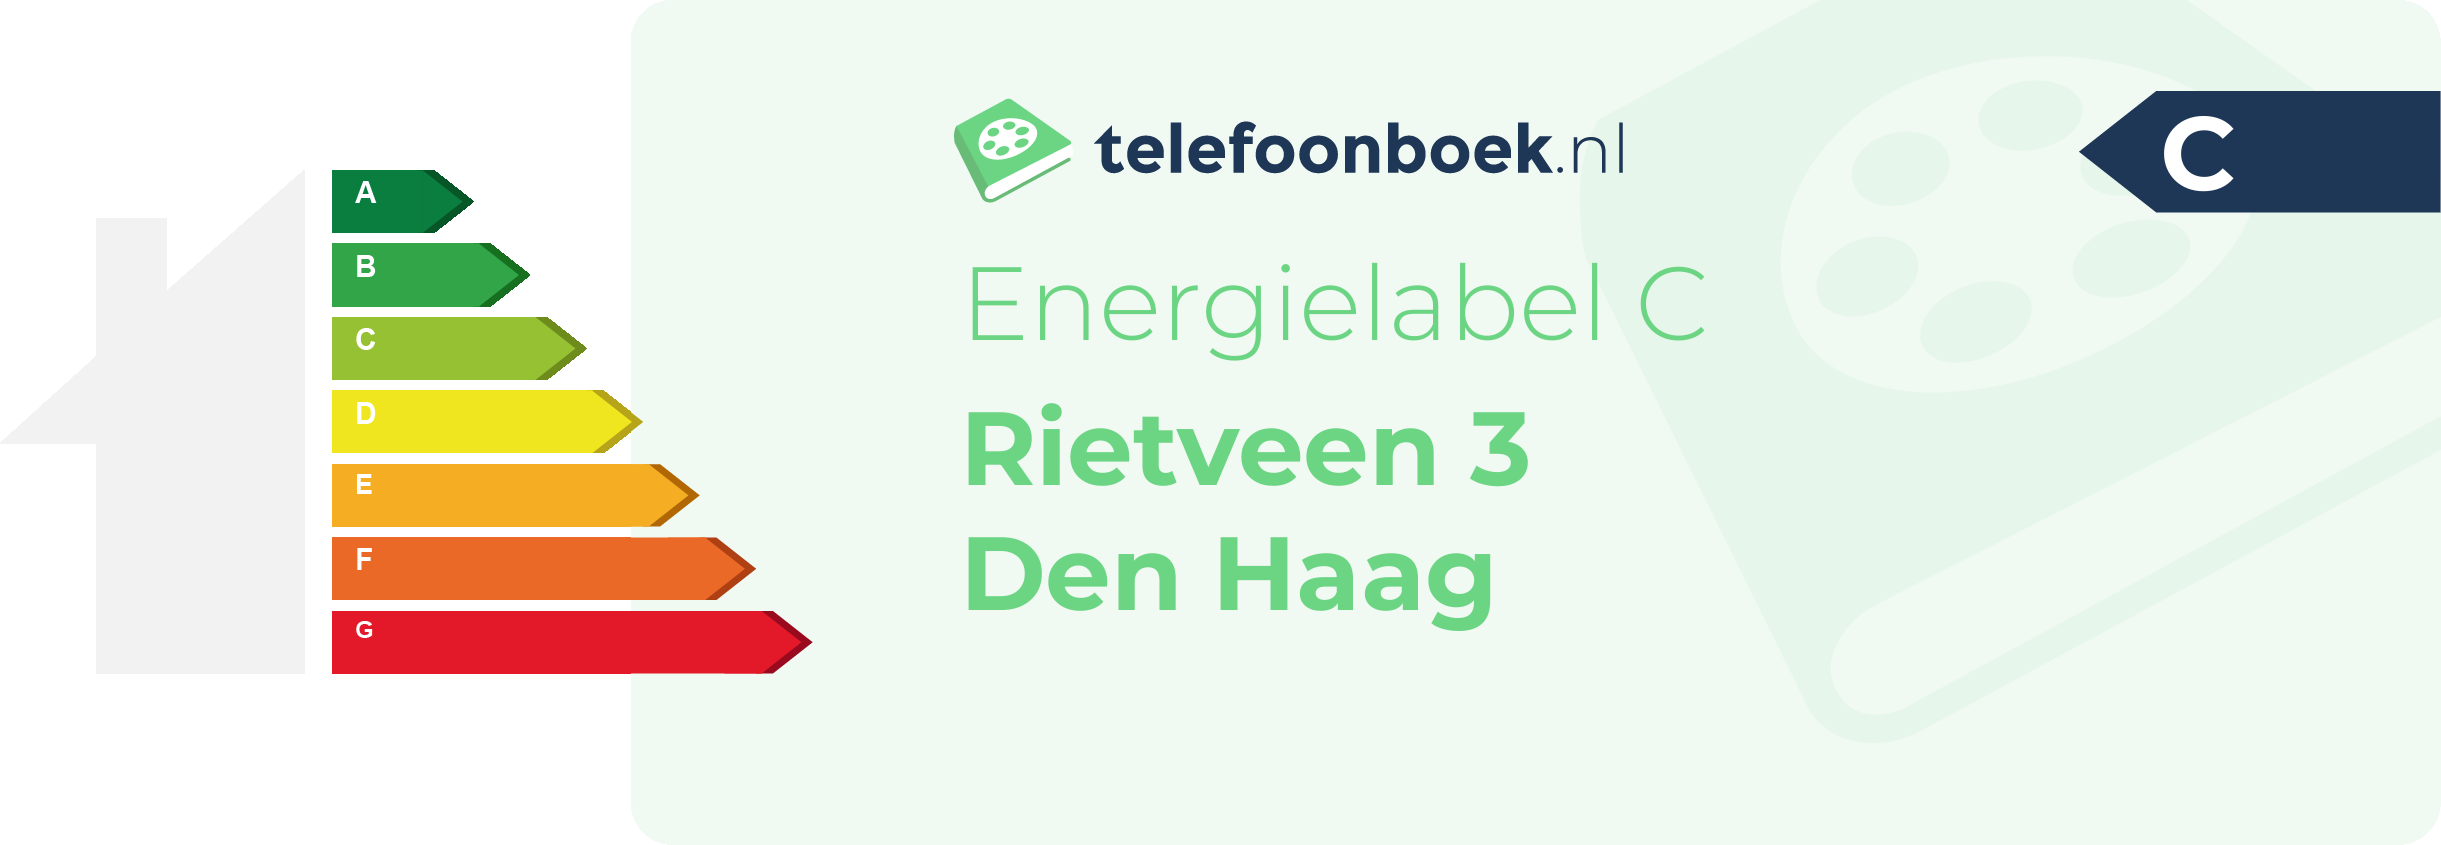 Energielabel Rietveen 3 Den Haag